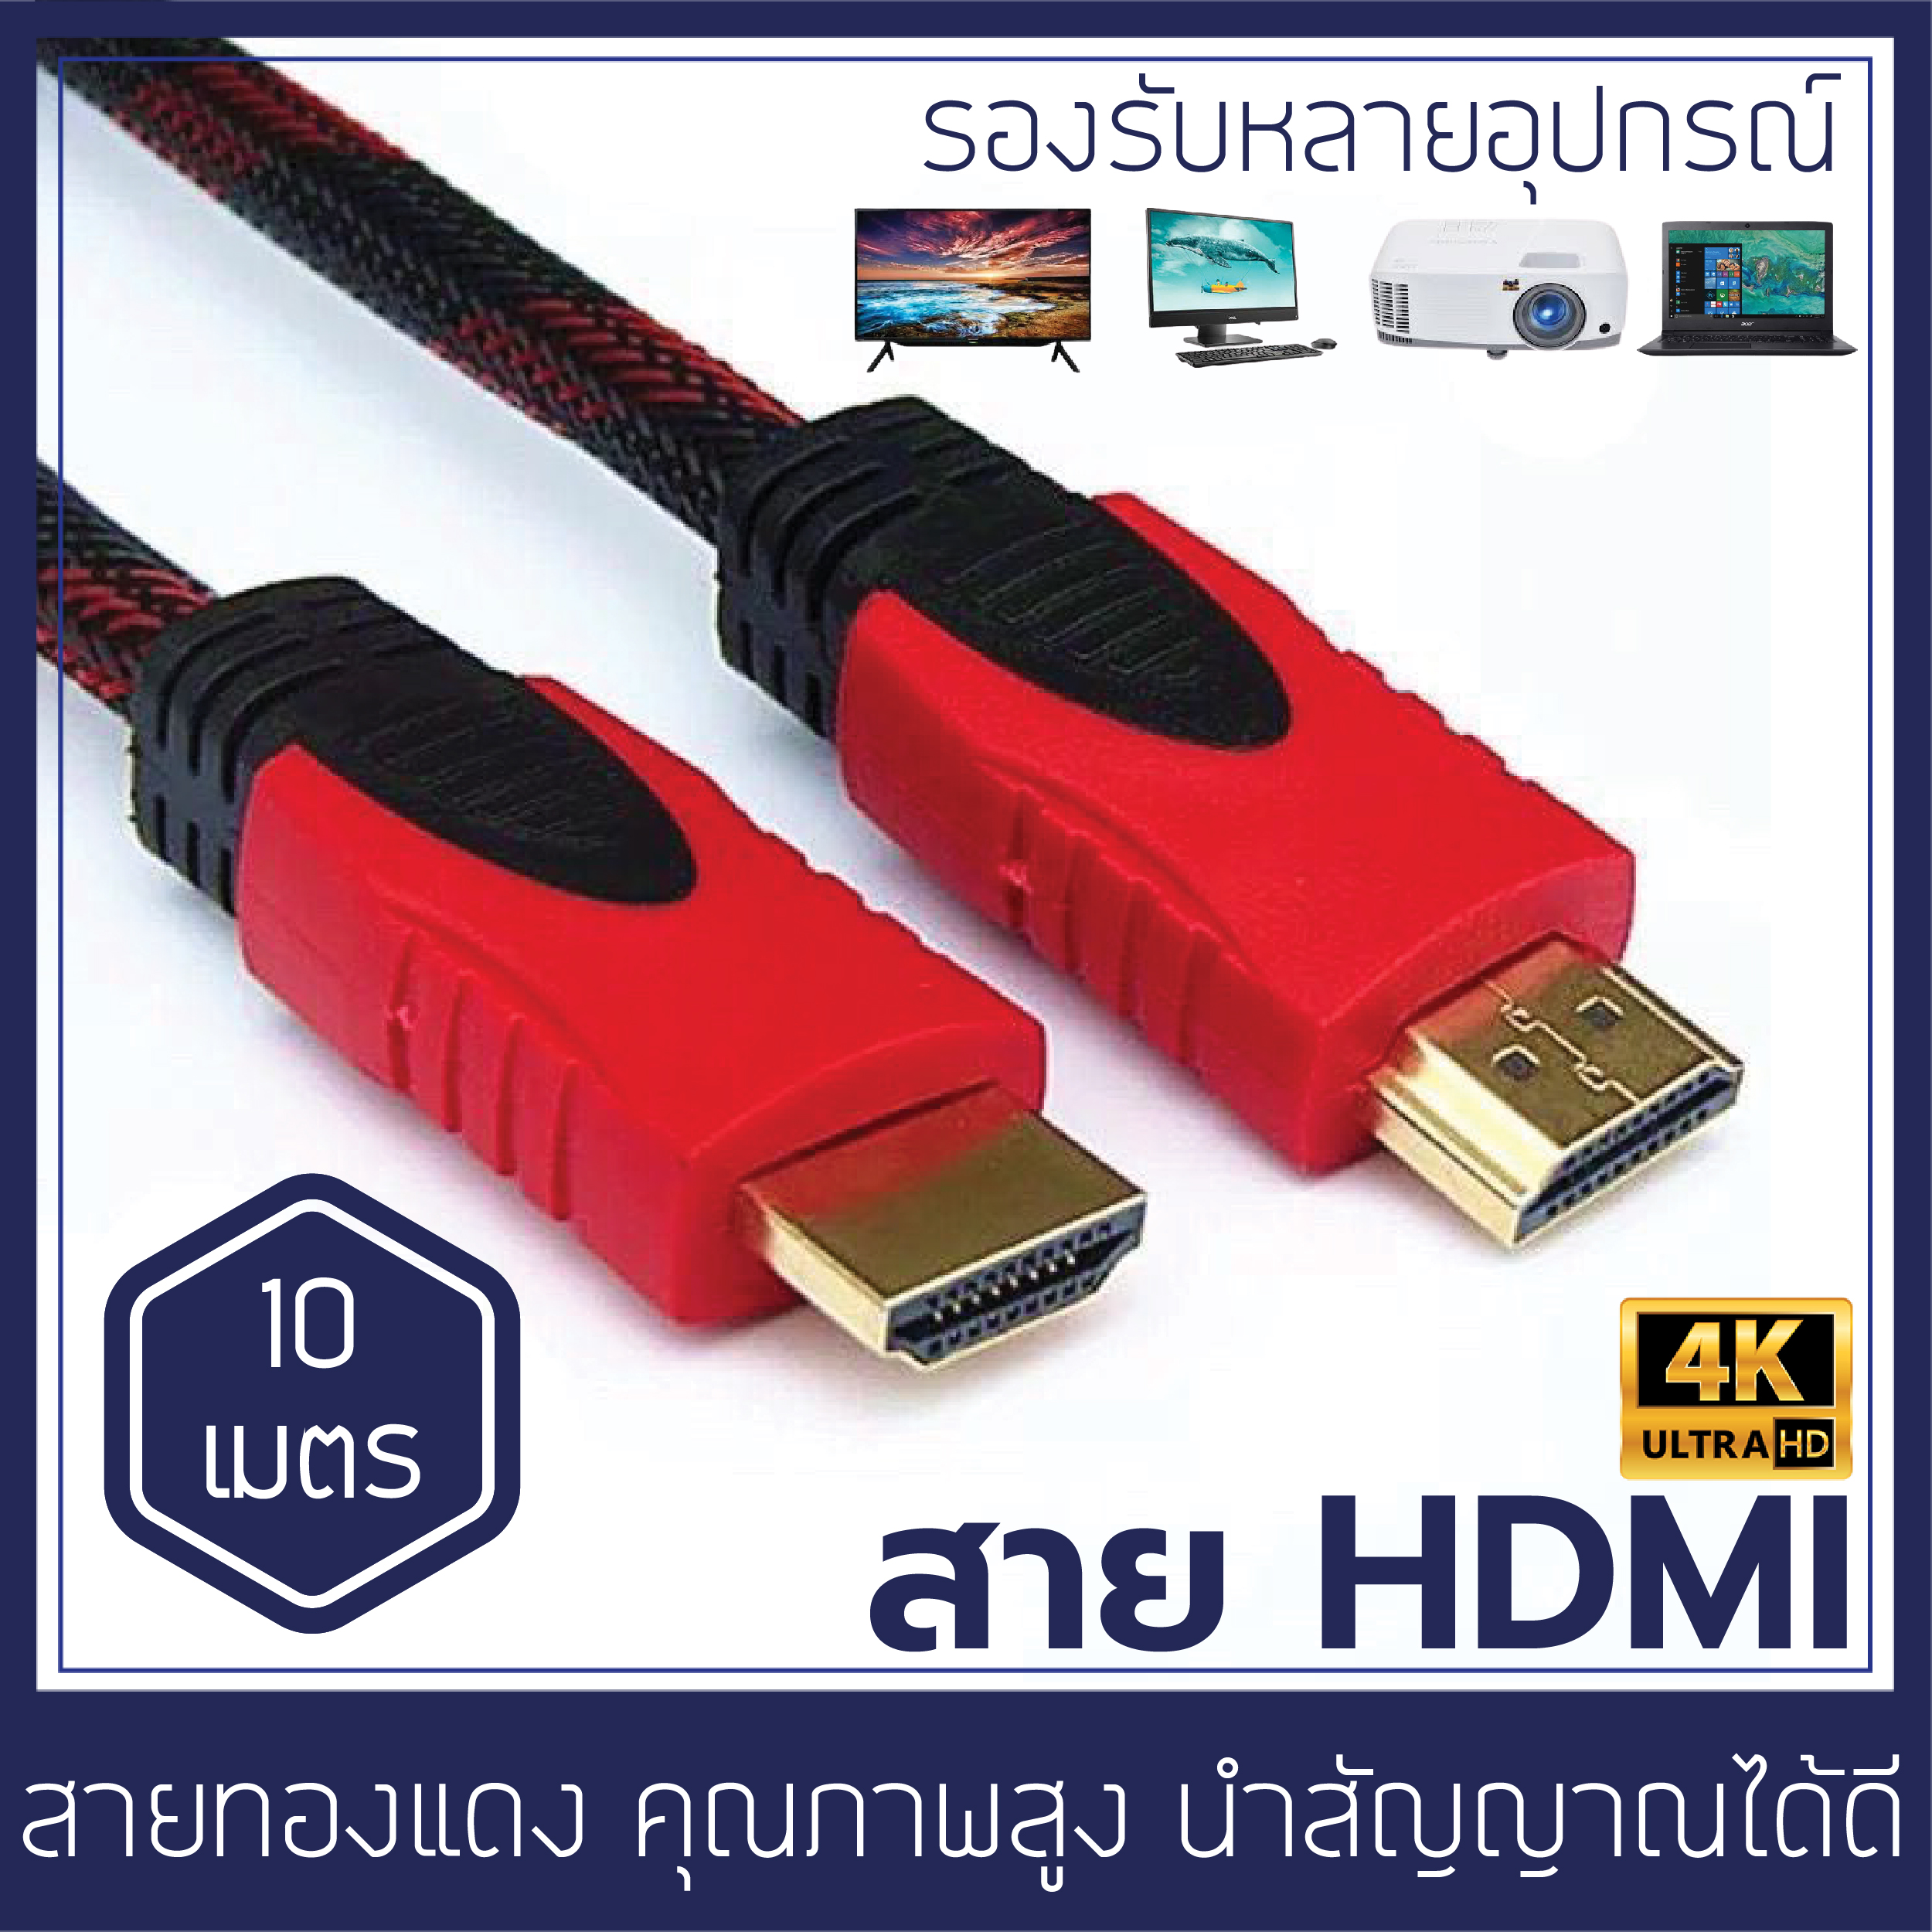 สายHDMI ความยาว 10 เมตร รองรับความละเอียด 4K สายทองแดงแท้ ใช้กับทุกอุปกรณ์ที่สามารถเชื่อมต่อ HDMI ได้ TV Notebook Projecter CCB03 High speed hdmi cable